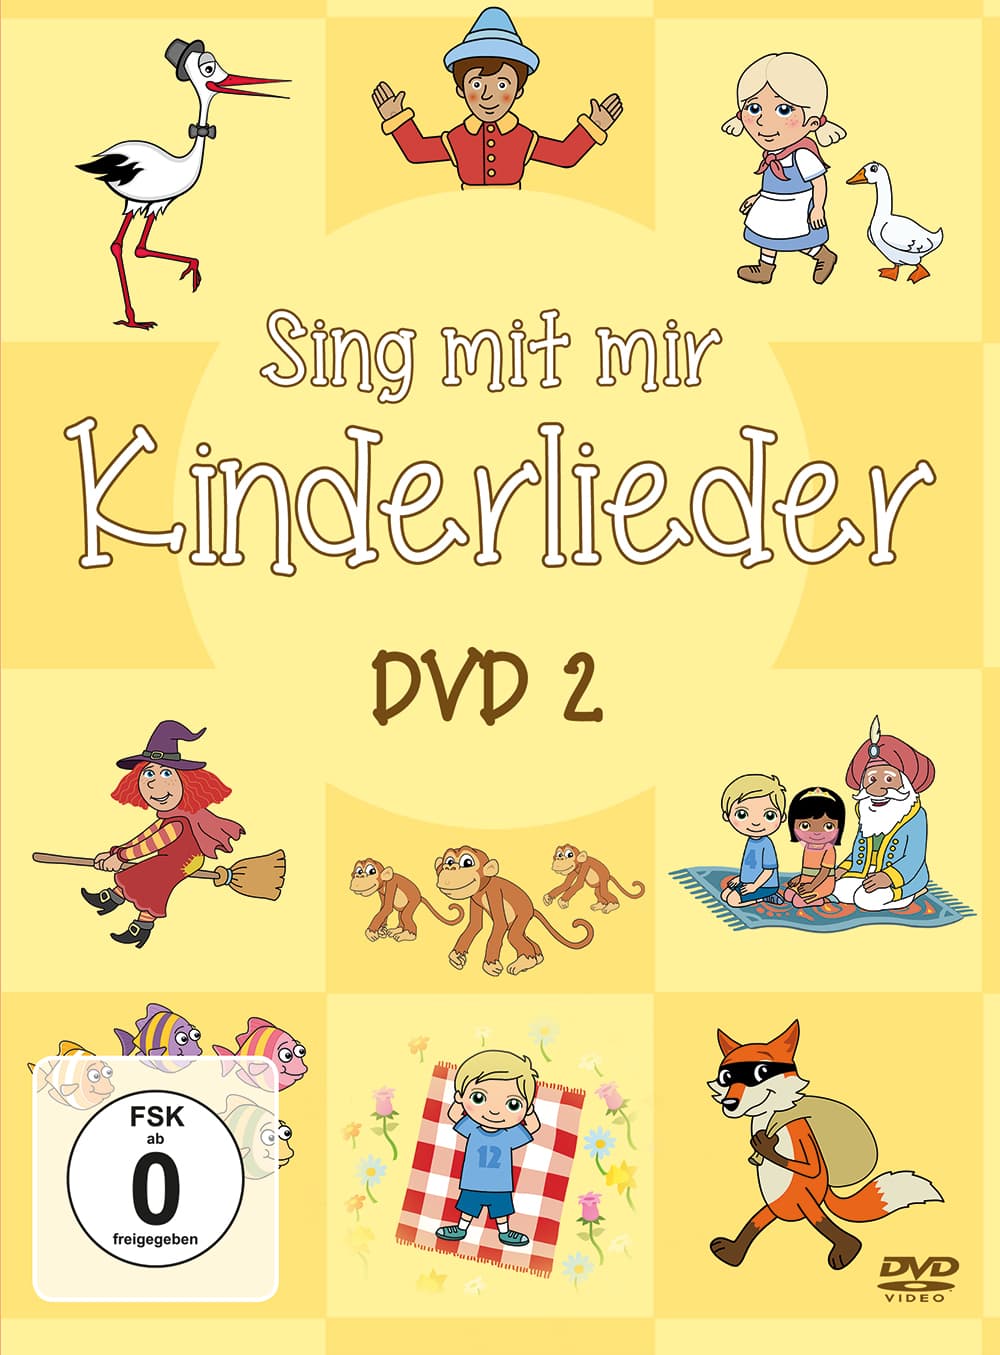 Sing mit mir Kinderlieder - DVD 2